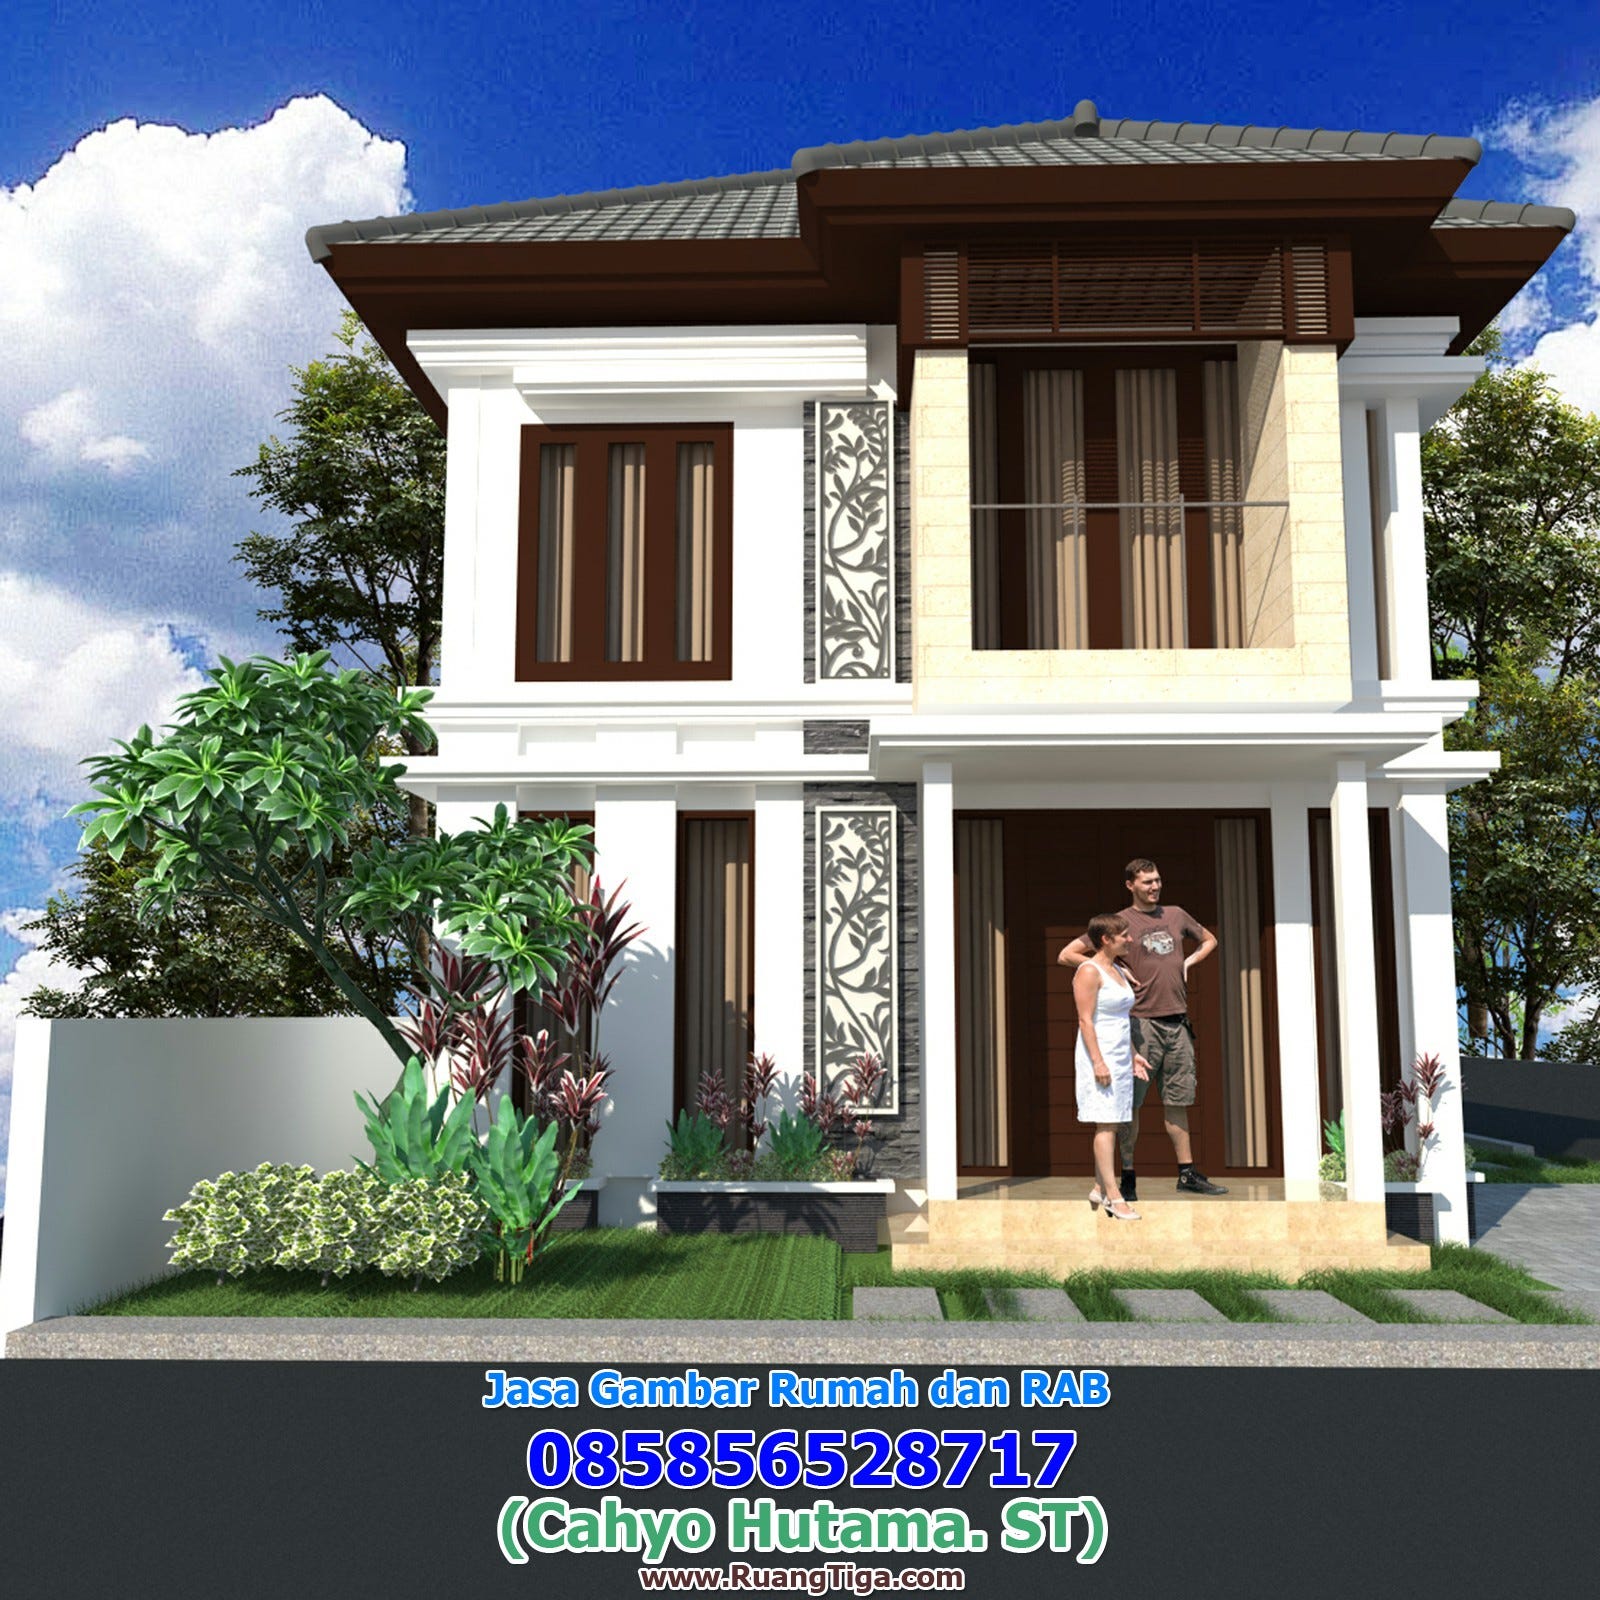 085856528717 Jasa Desain Rumah Jombang Jasa Desain Rumah